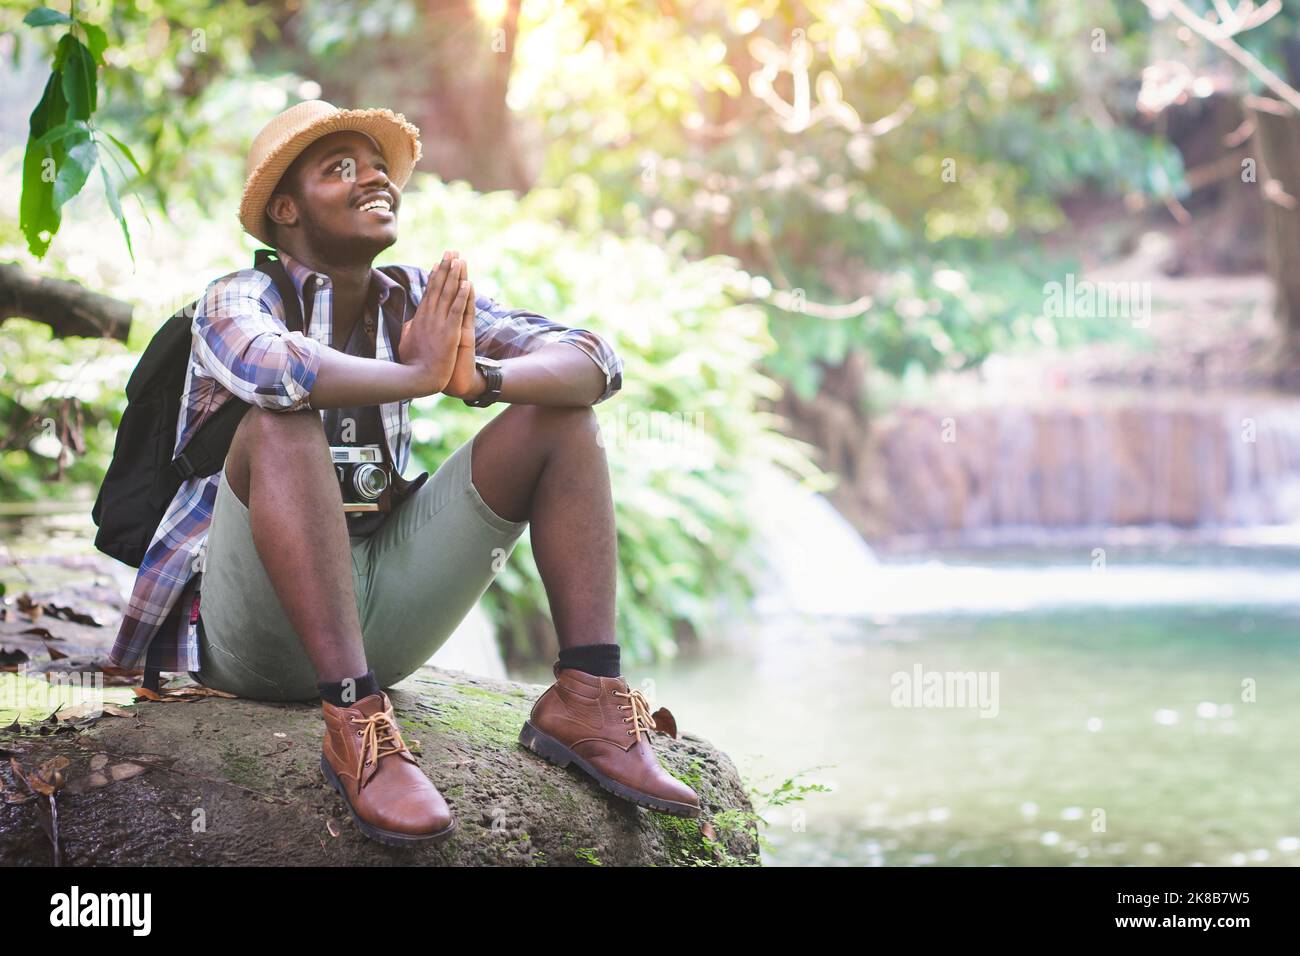 Il turista africano del trekking prega di ringraziare Dio per le cose buone nella sua vita. Concetto di fede, religione e buona vita. Foto Stock